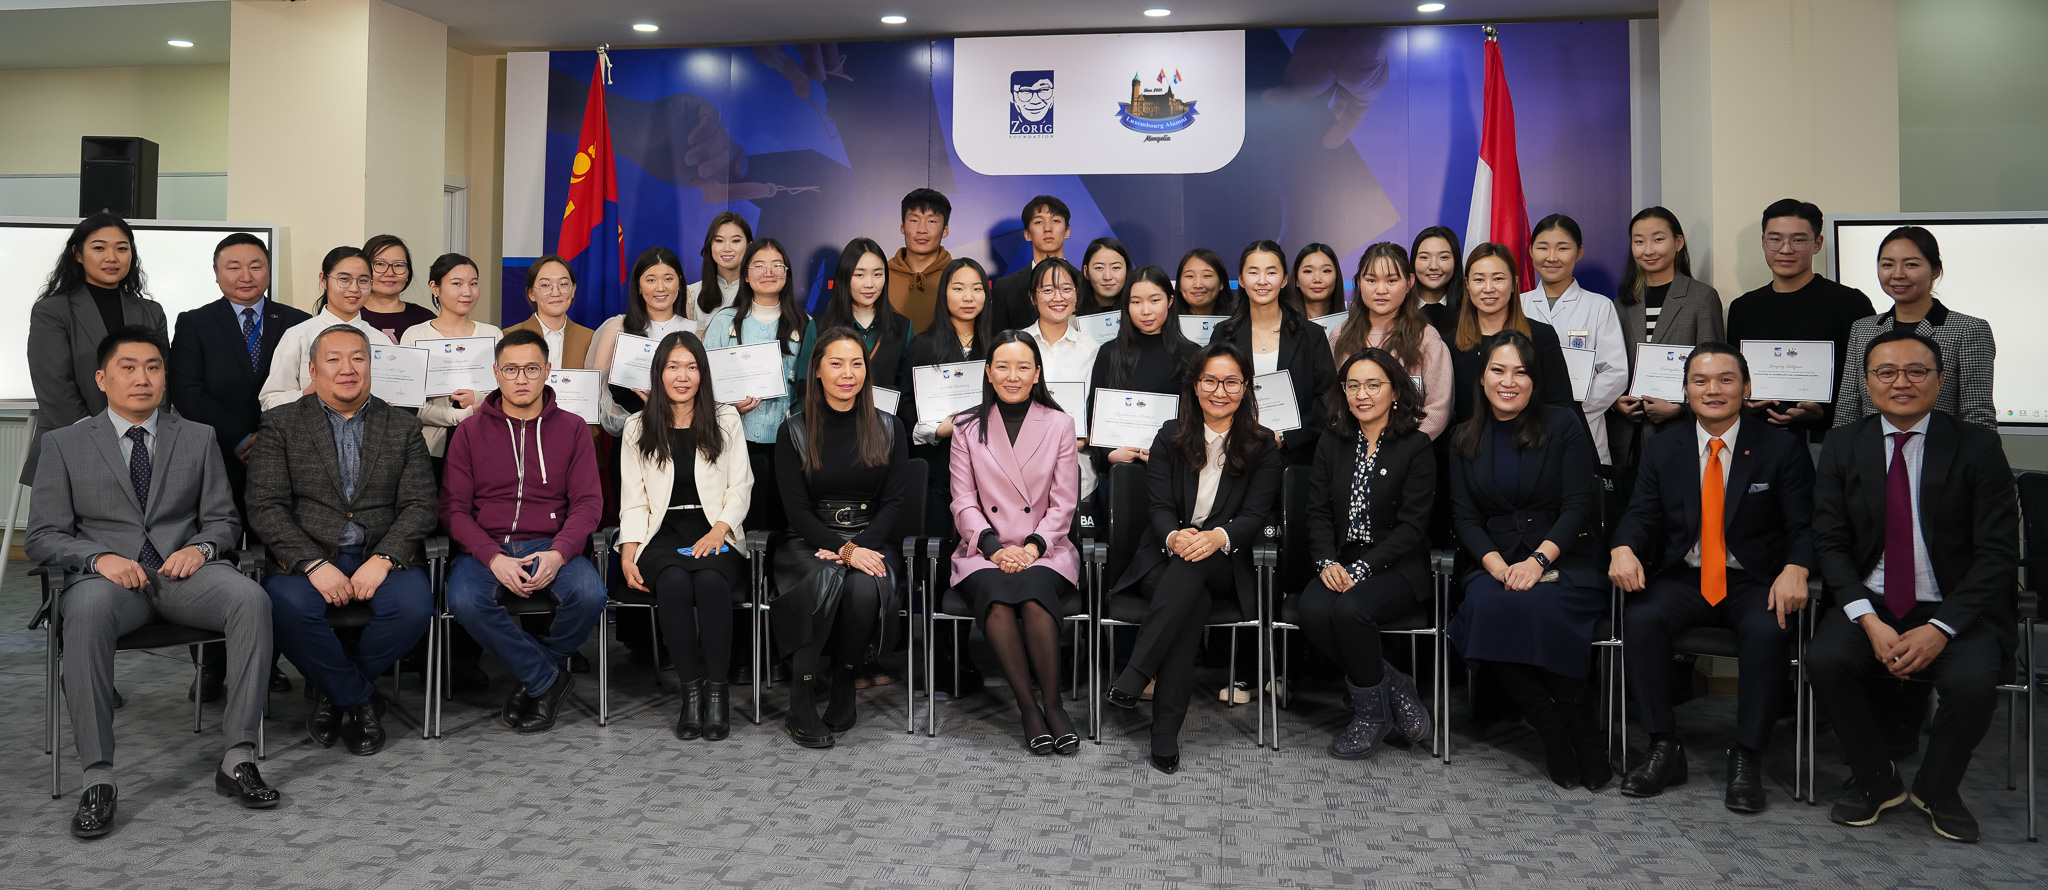 Scholarship award winners with Uni.lu alumni